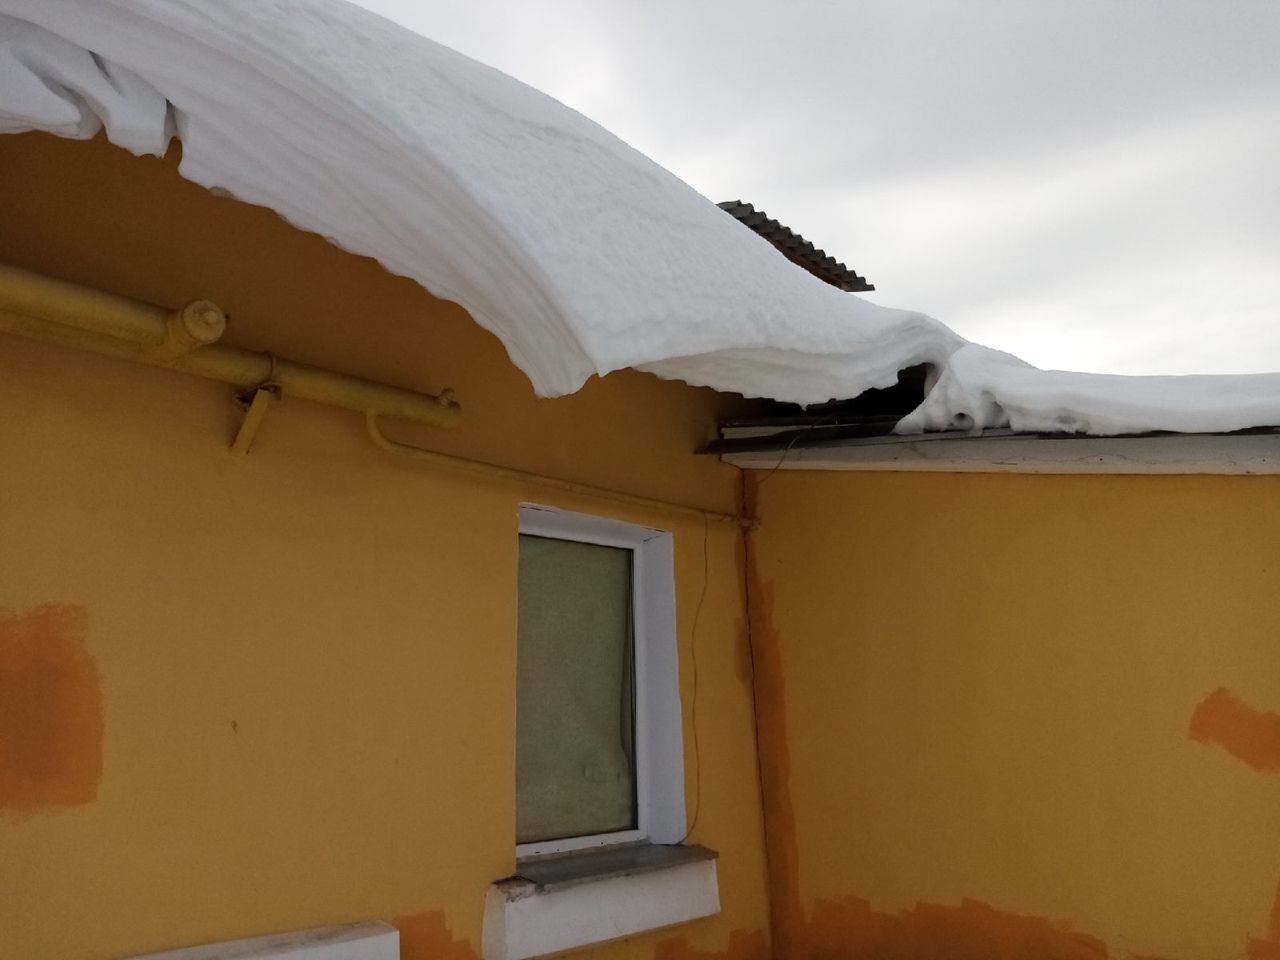 О состоянии пострадавшей от схода снега жительницы рассказали в минздраве региона